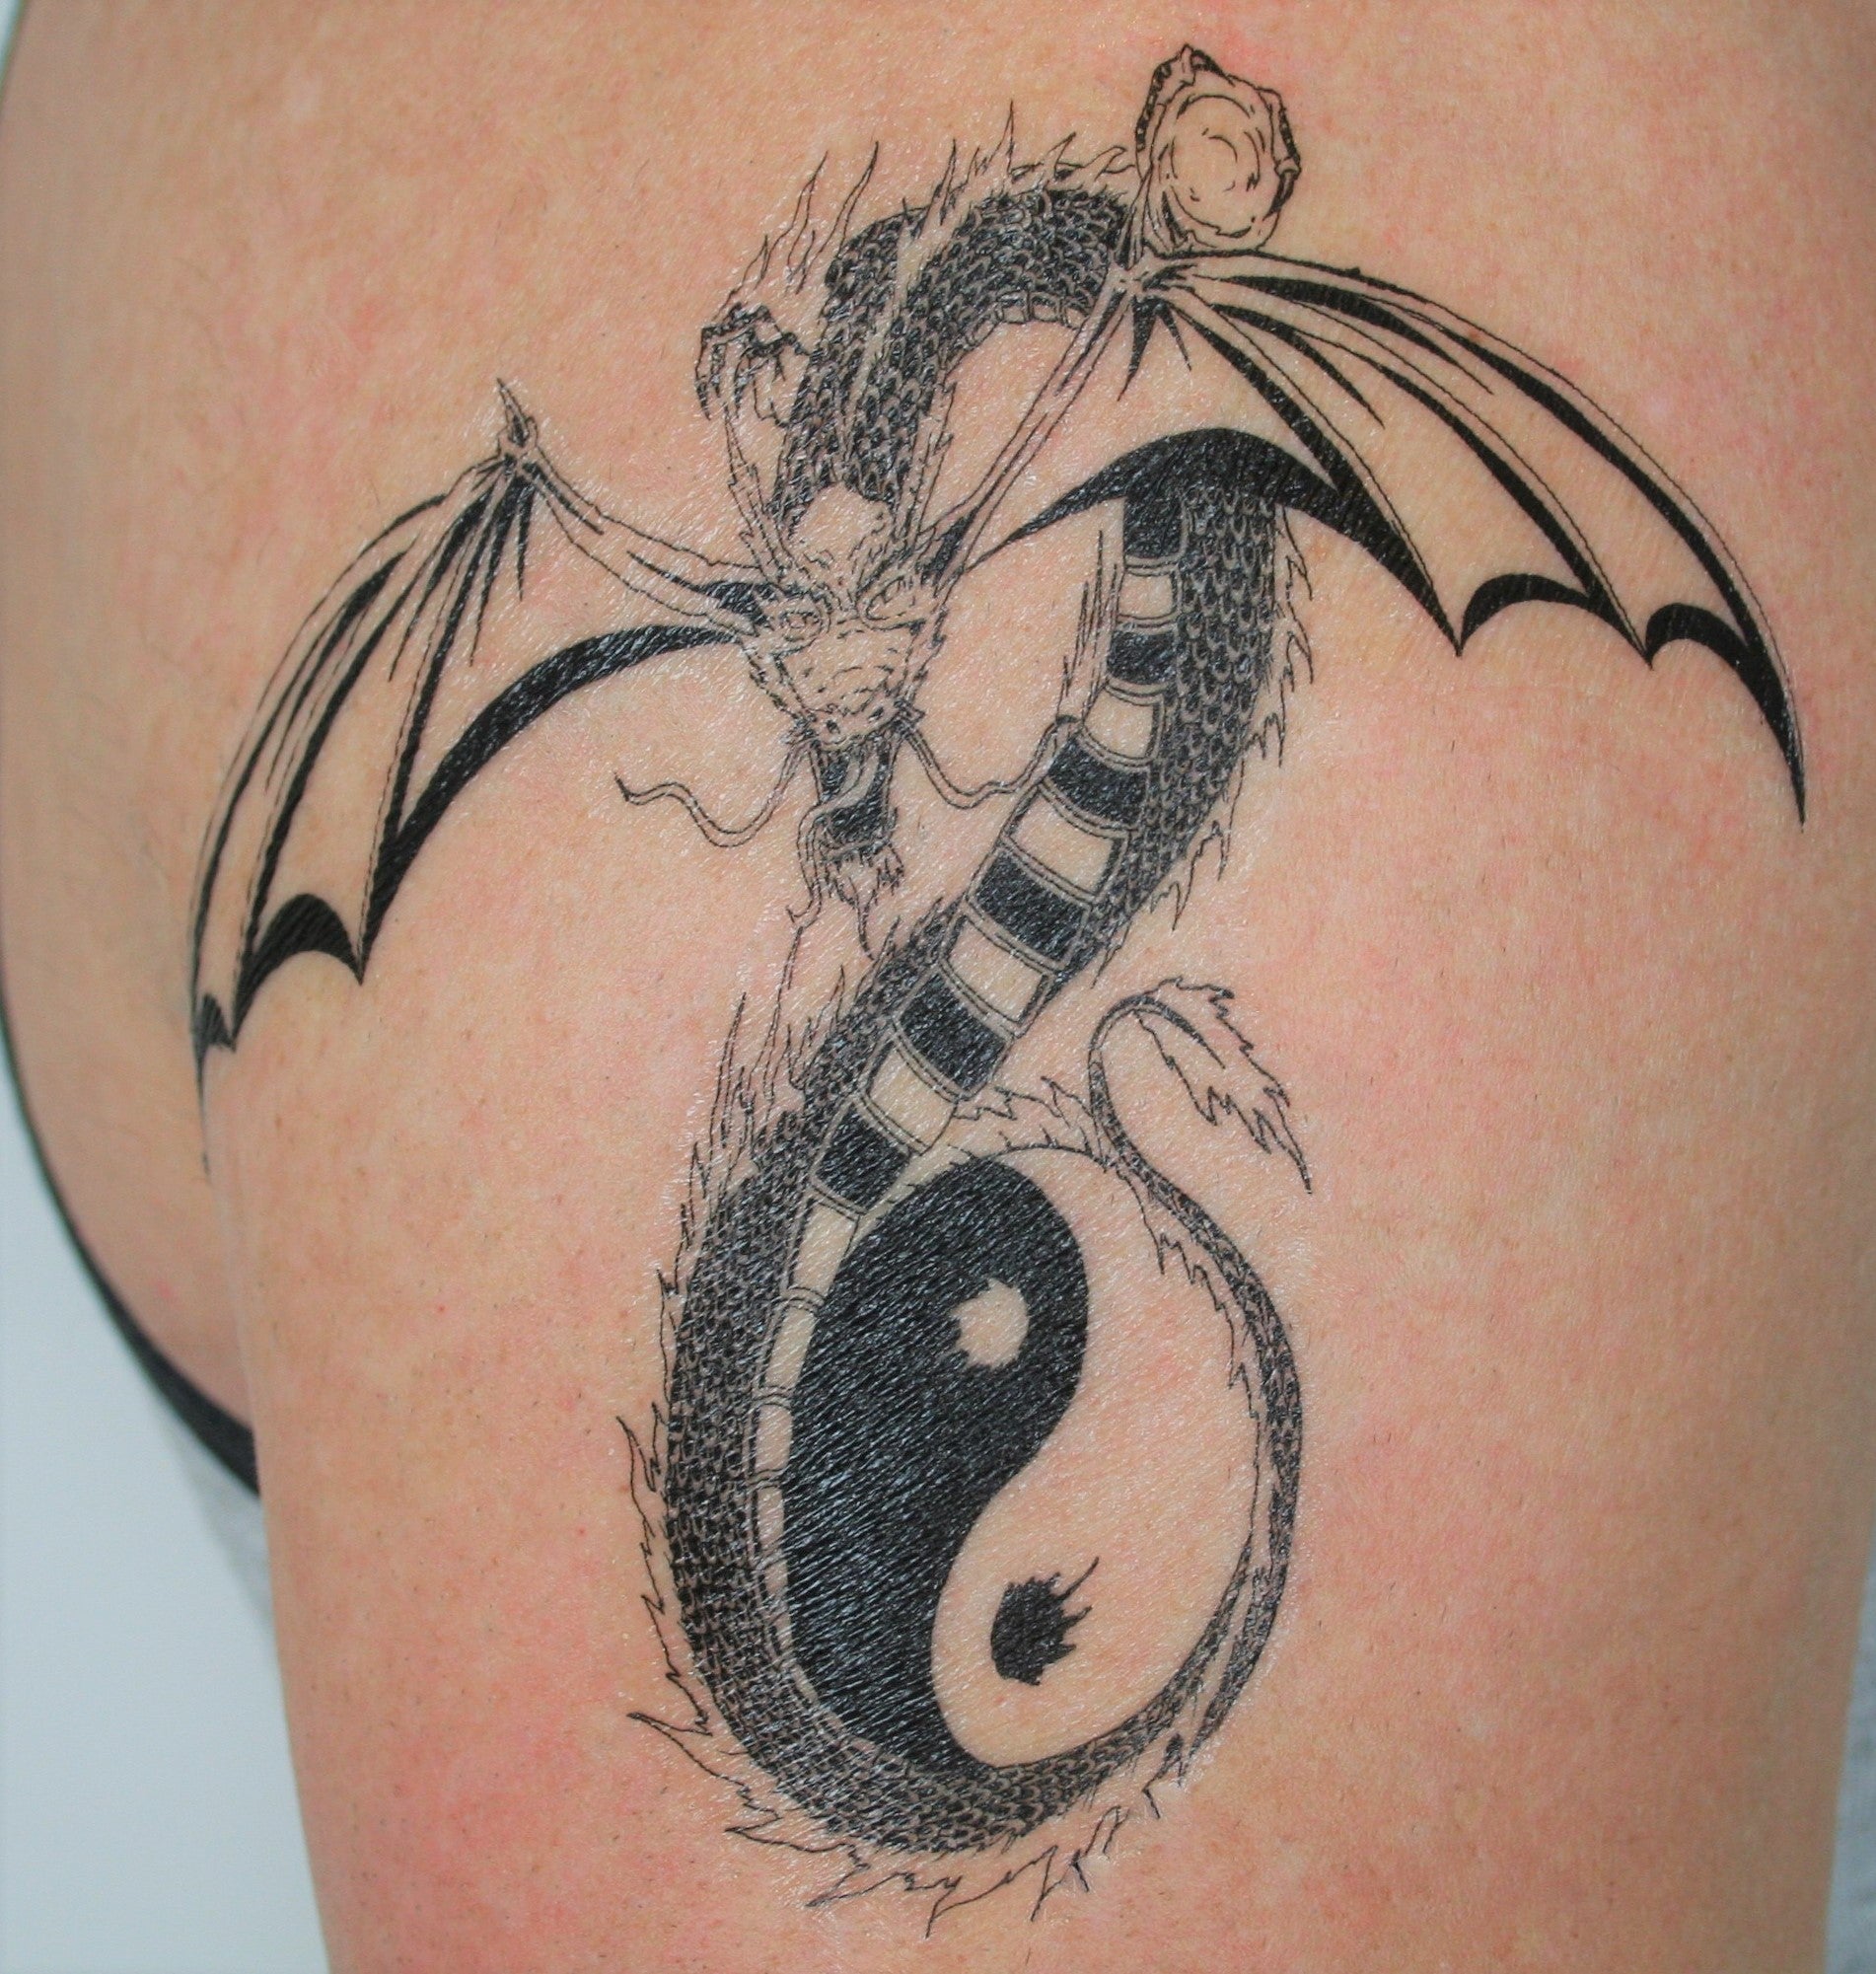 Dragon Tattoo Pack  Semi-Permanent Tattoo - Not a Tattoo